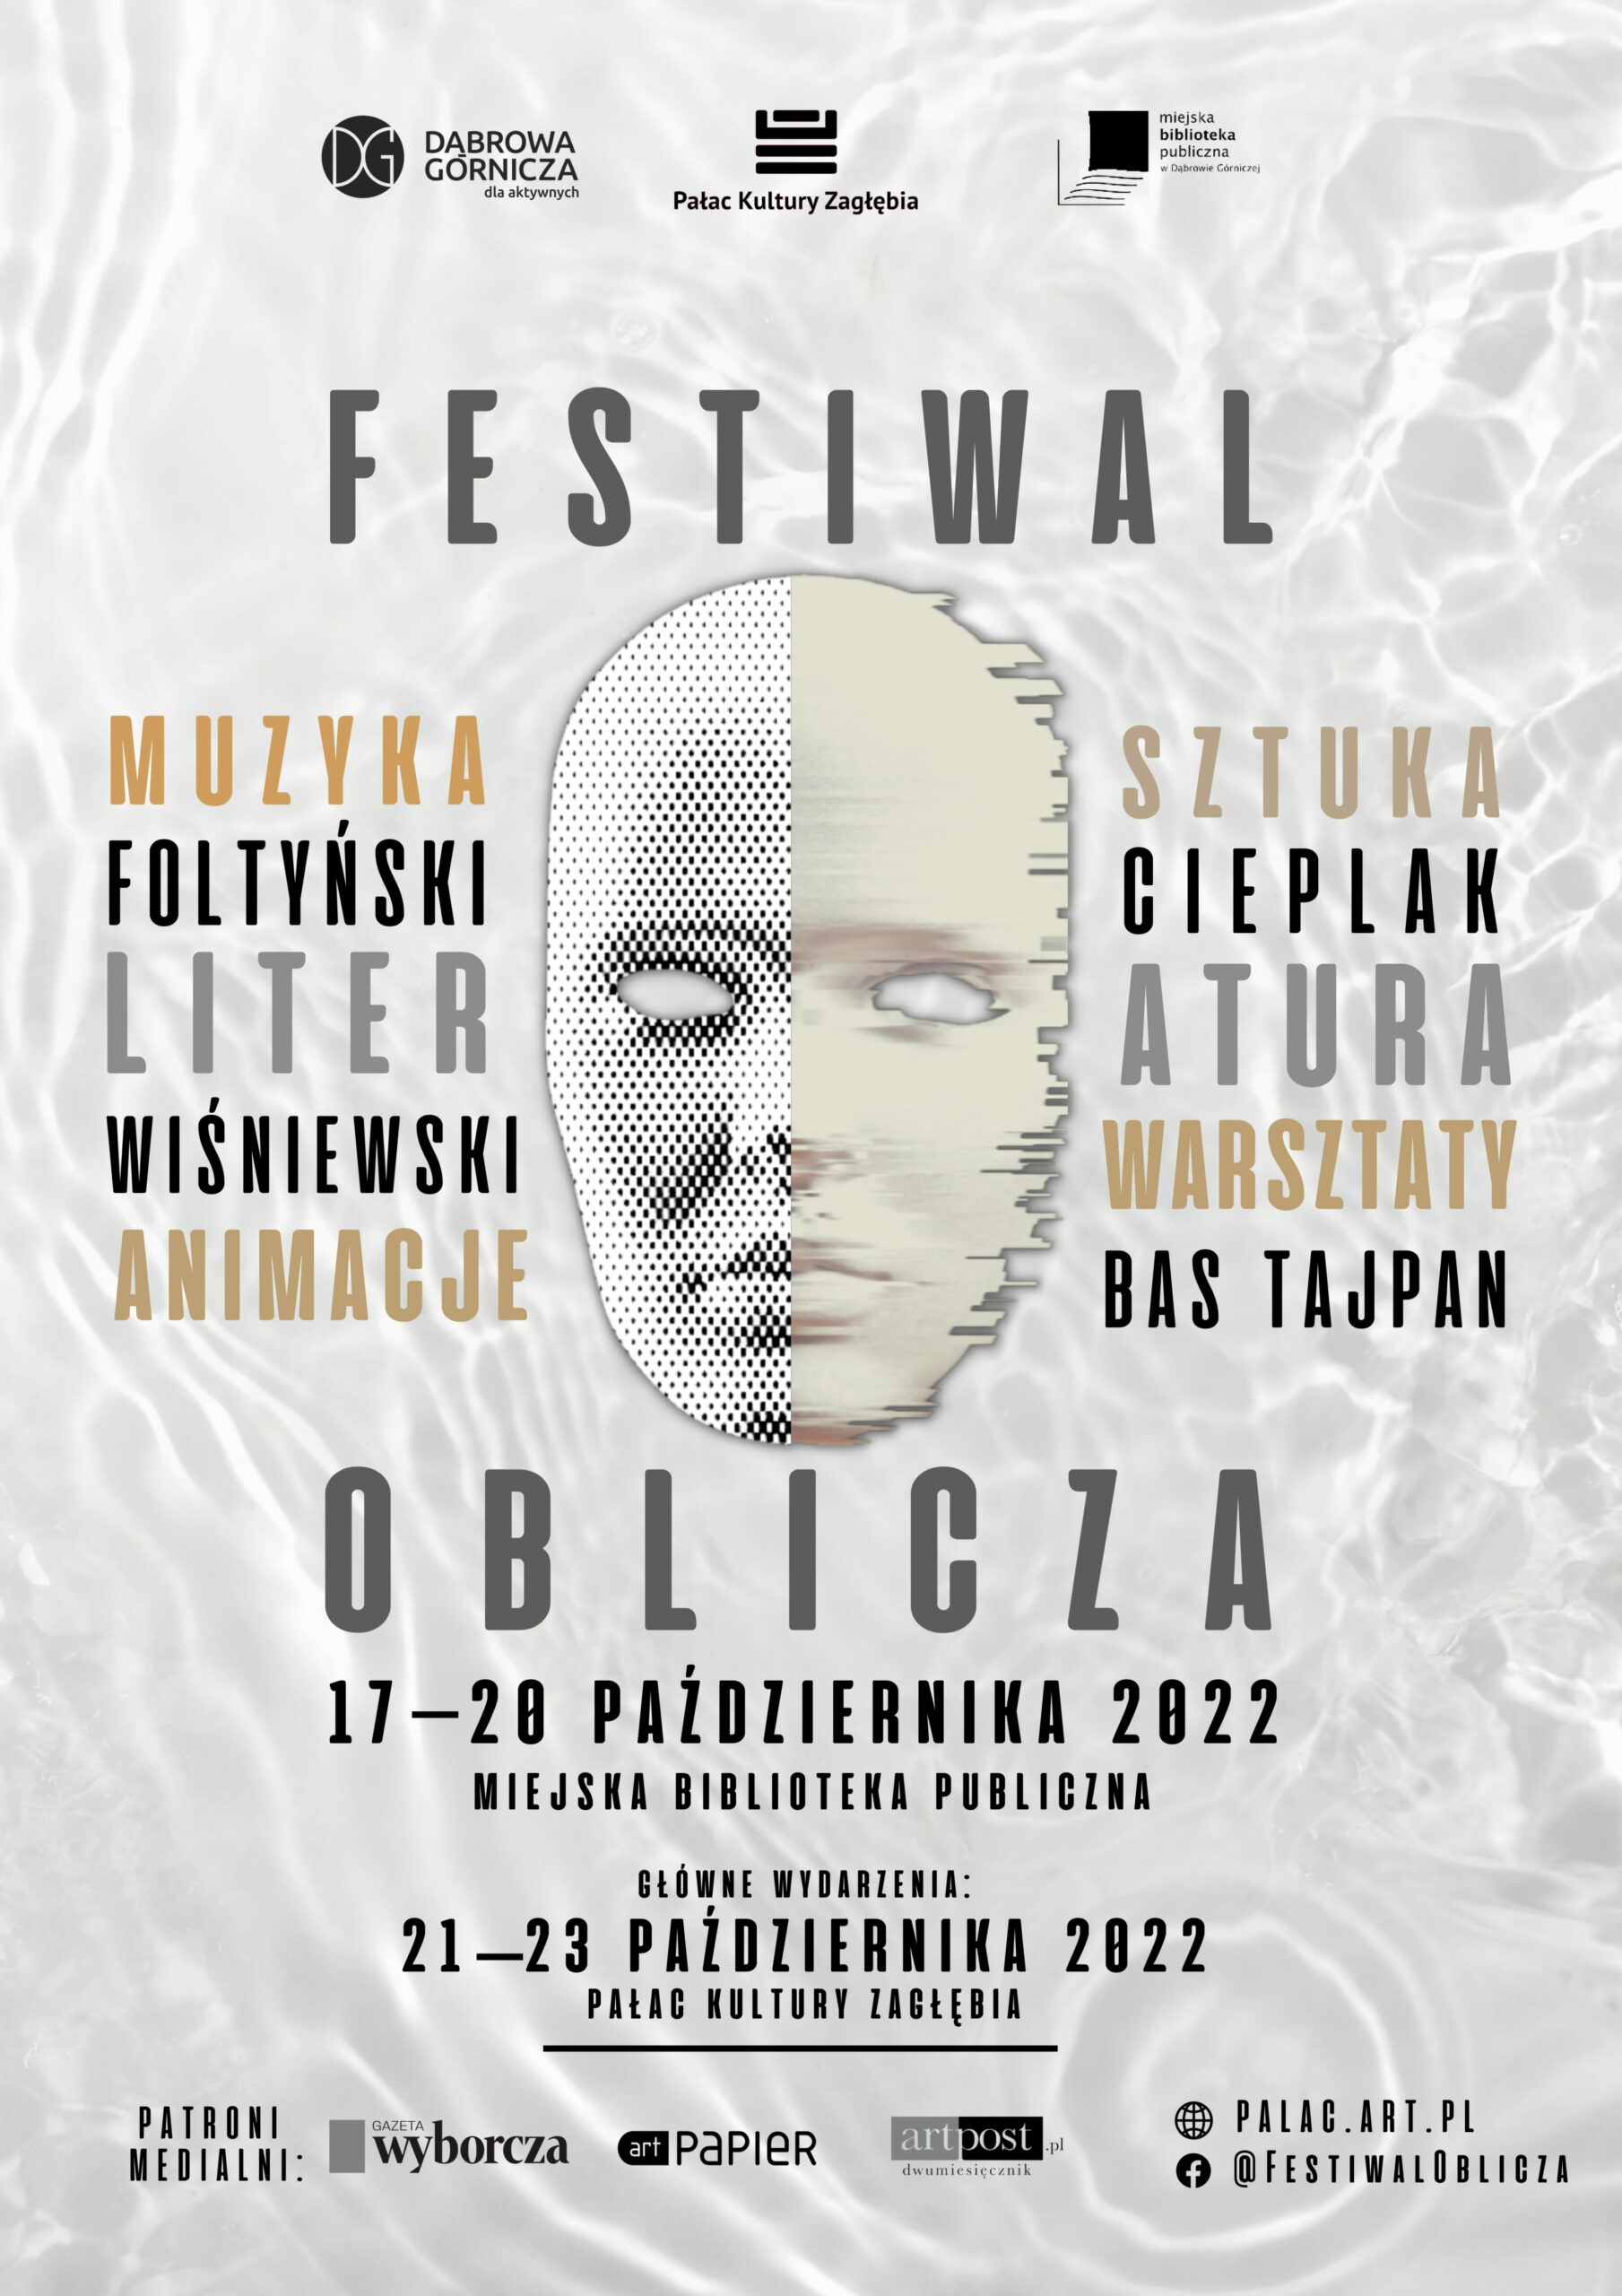 Festiwal “Oblicza” w dąbrowskiej książnicy